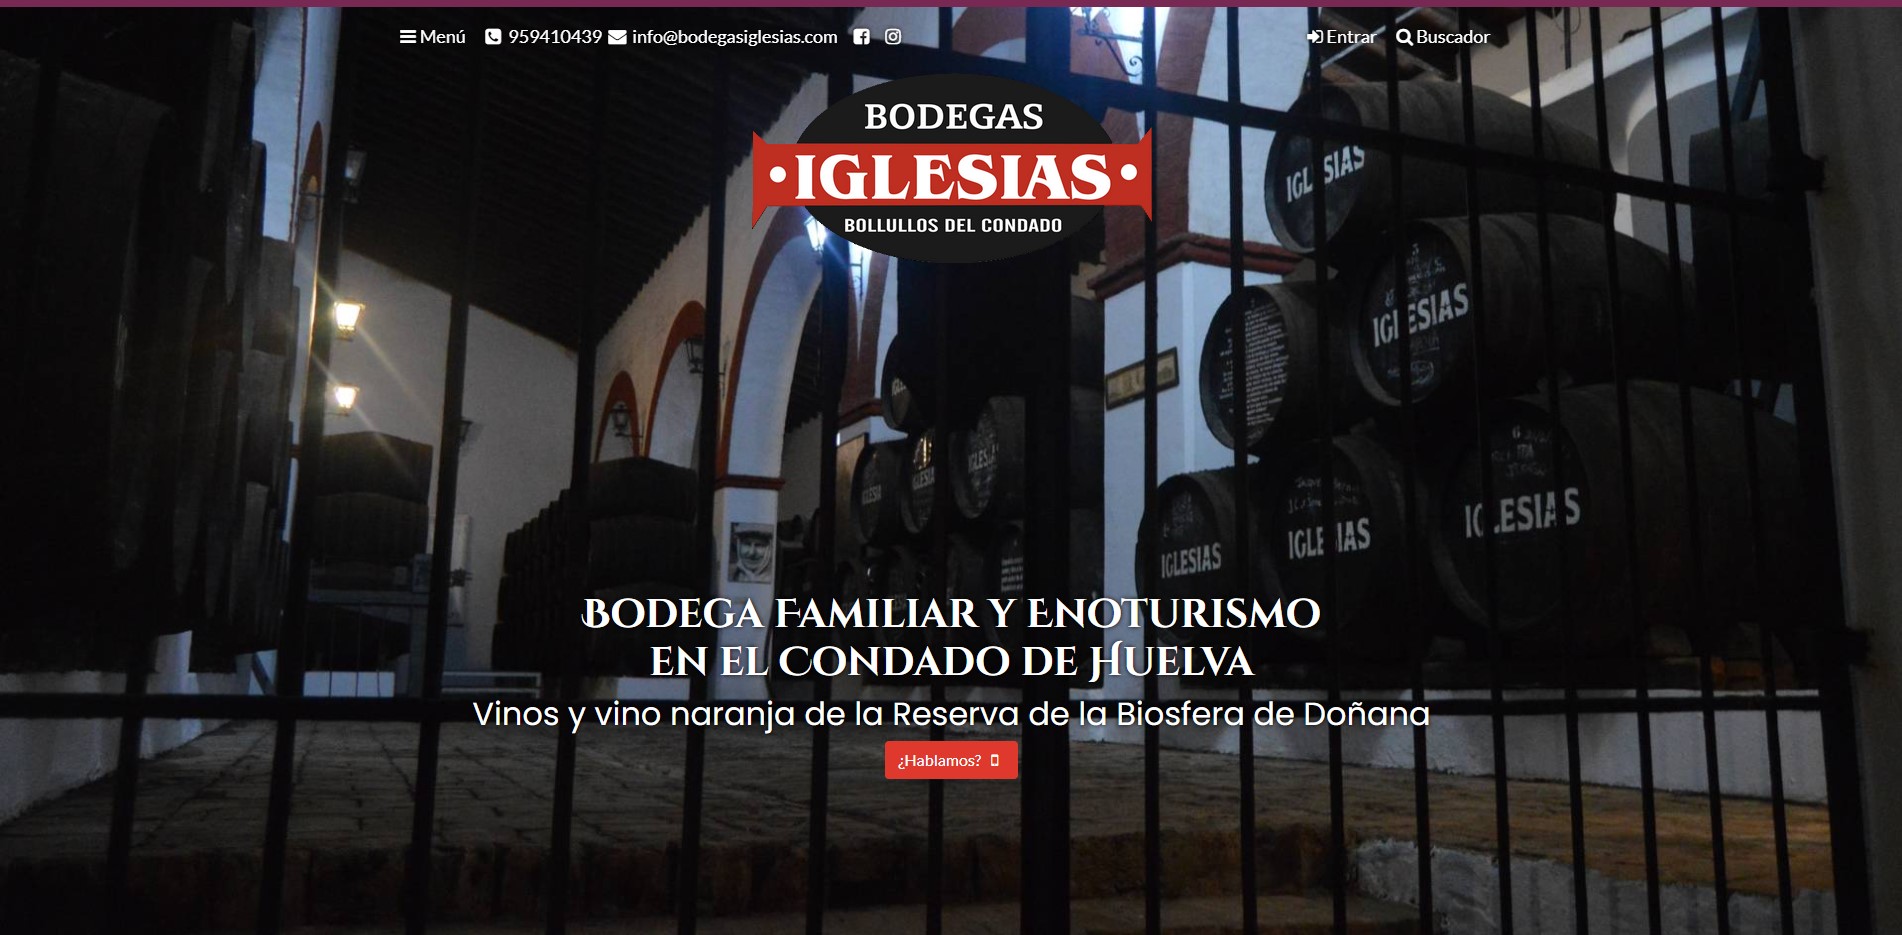 Web Bodegas Iglesias Vino Condado Huelva